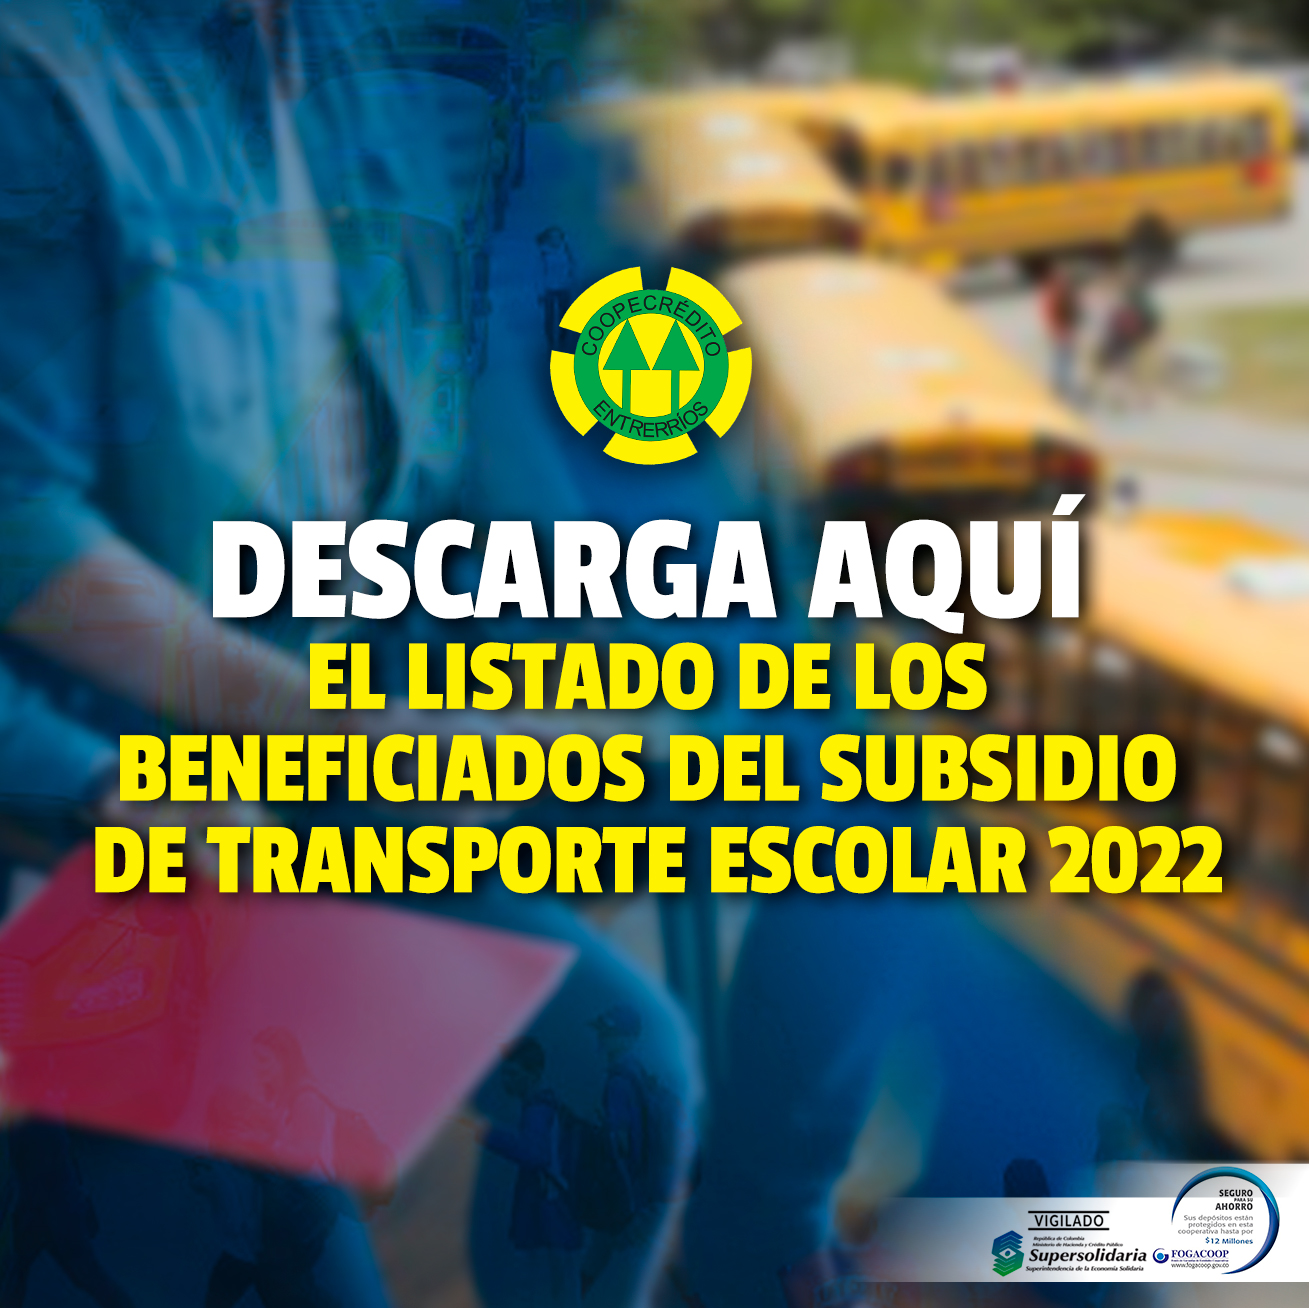 Descarga aquí el listado de los beneficiados del subsidio de transporte escolar 2022